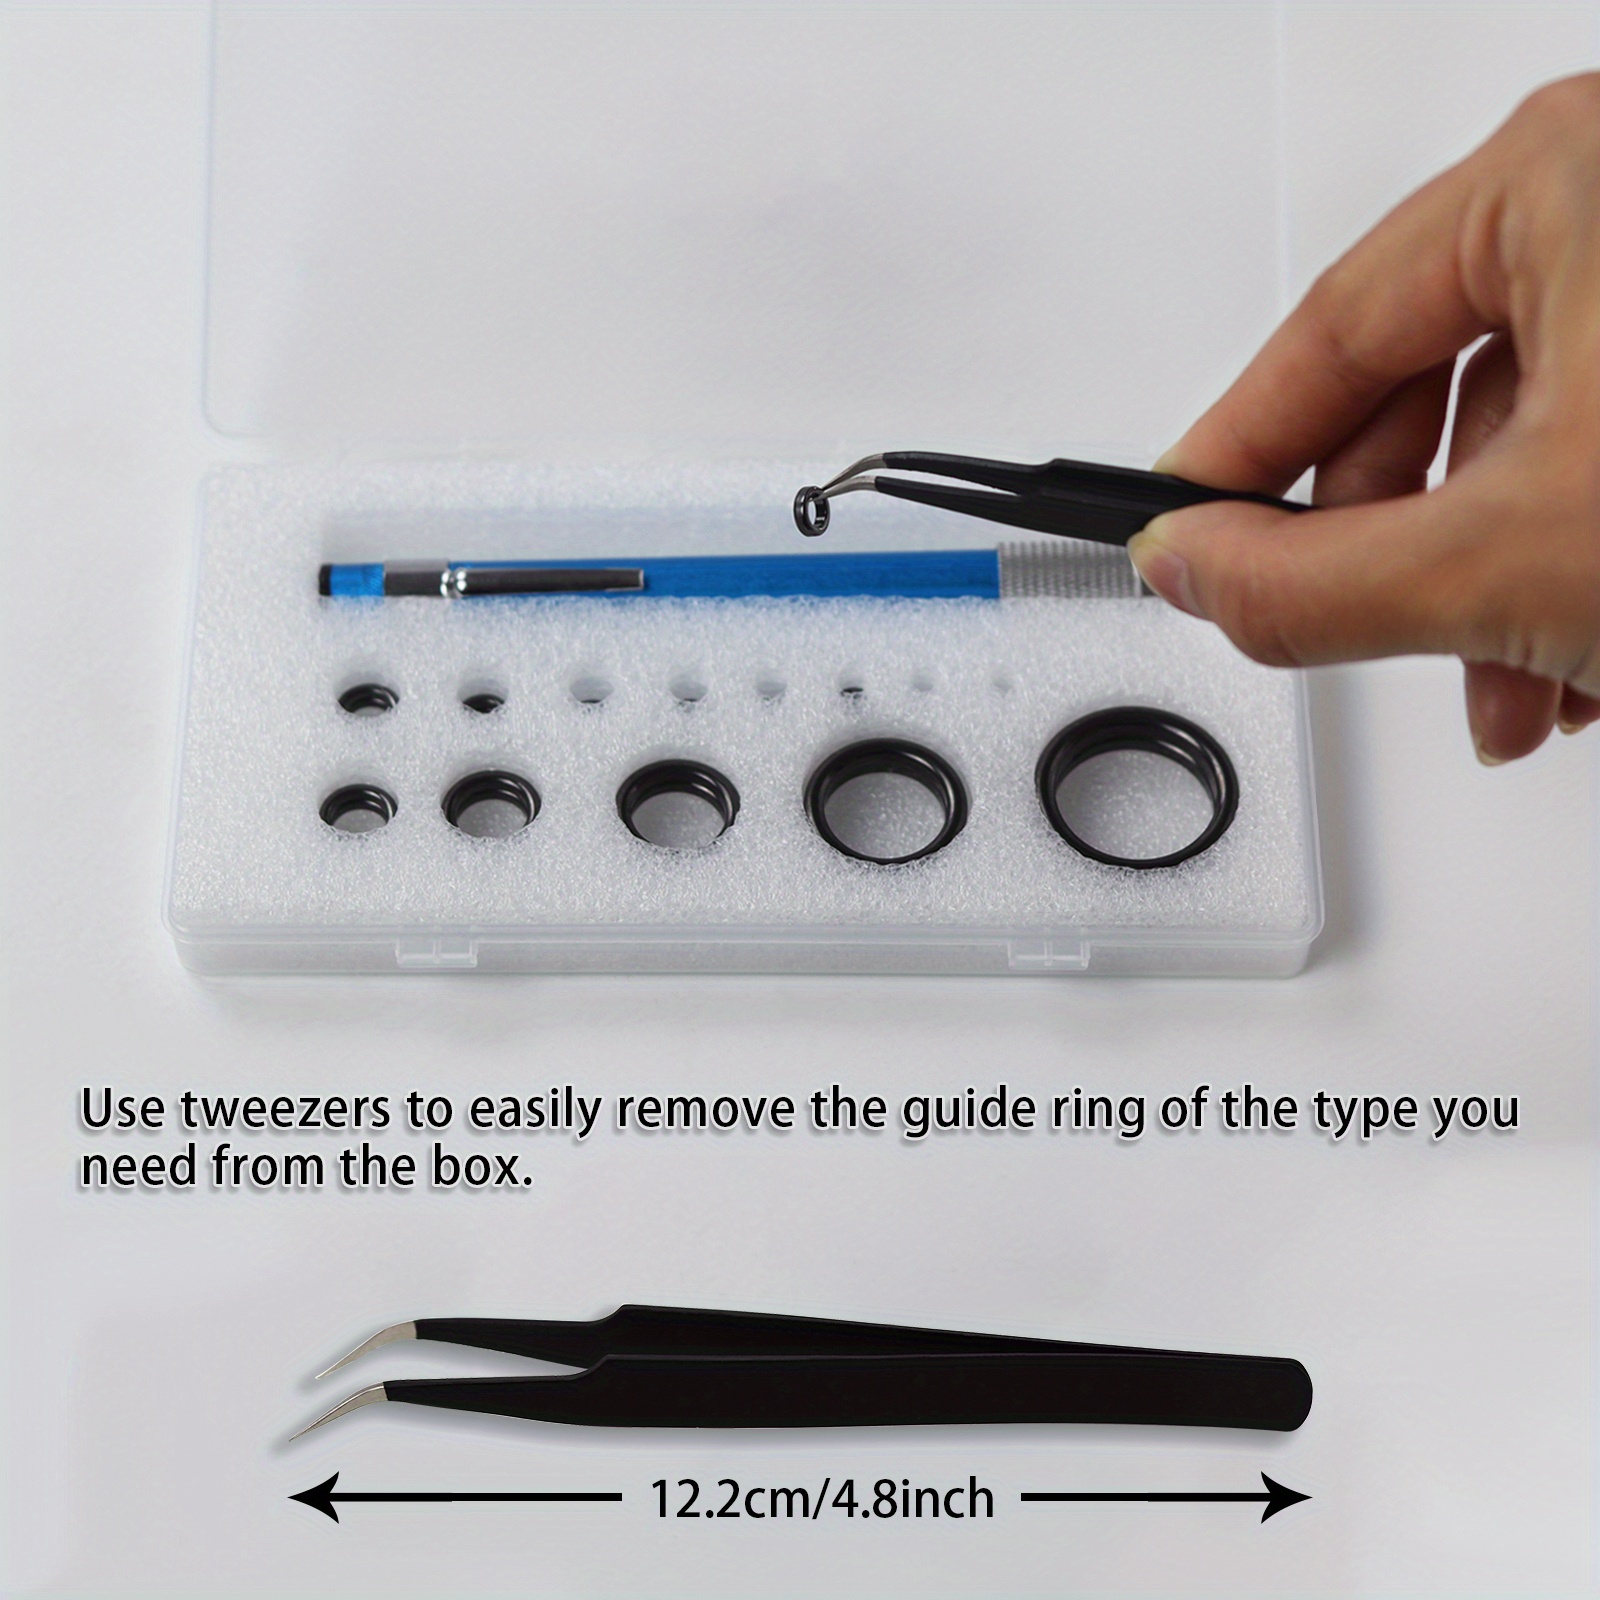 Fish Rod Repair Kit: Repair Your Fishing Pole Eyelet 13 Size - Temu